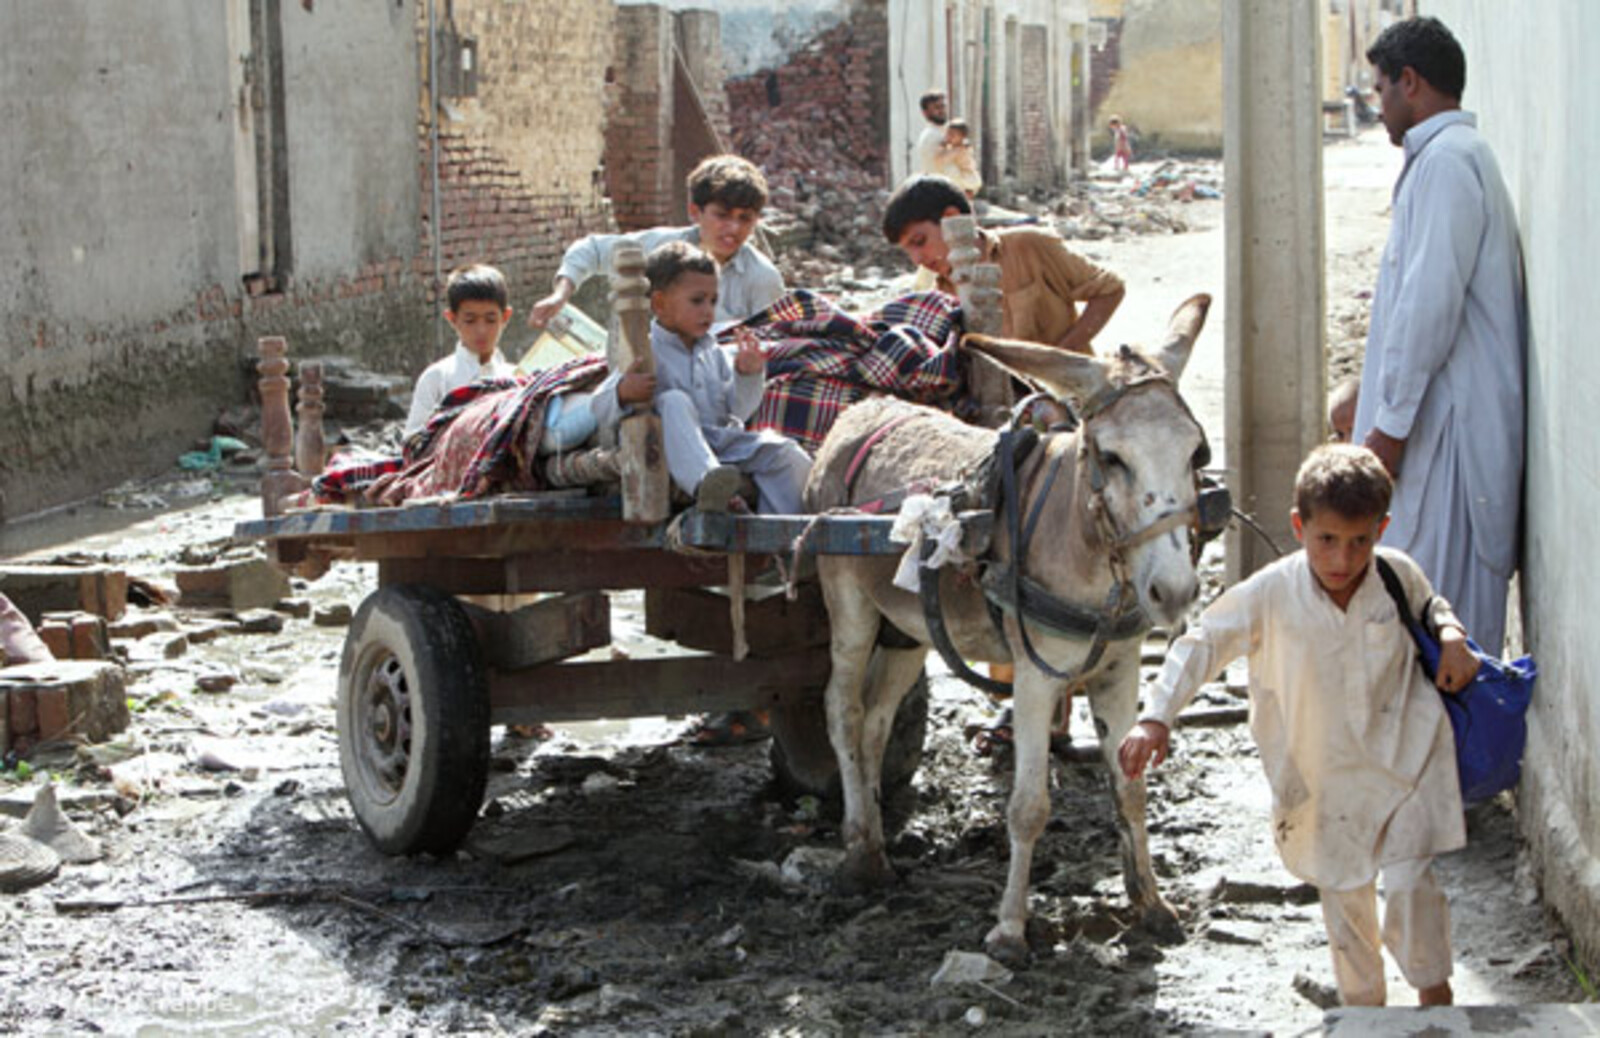 27.08.2010, Pakistan, Nowshera, Peshawar - Hochwasser Pakistan. Nachdem das Wasser zum Teil abgeflossen ist, ziehen die Bewohner zurück in ihre Häuser.